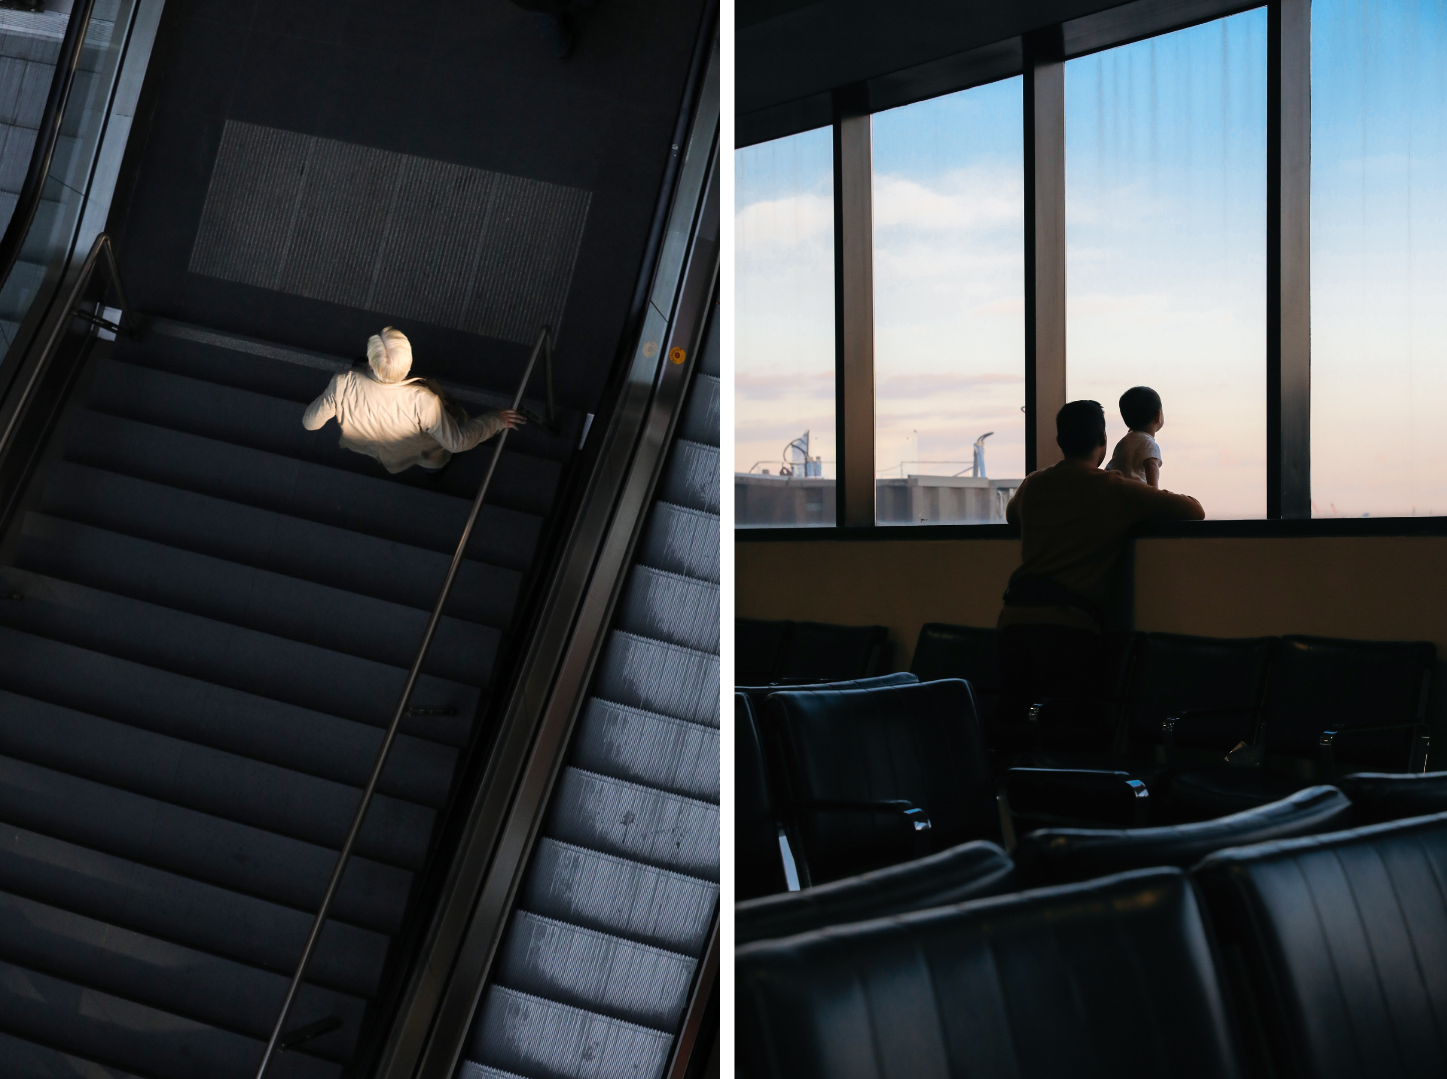 Fotografie rechts: eine Person auf einer Treppe, die neben einer Rolltreppe liegt, Aufnahme von oben an einem Hauptbahnhof, Fotografie rechts: stimmungsvolle Situation an einem Flughafen, ein Mann schaut mit seinem kleinen Kind aus den Fenstern, wo der Himmel hellt leuchtet